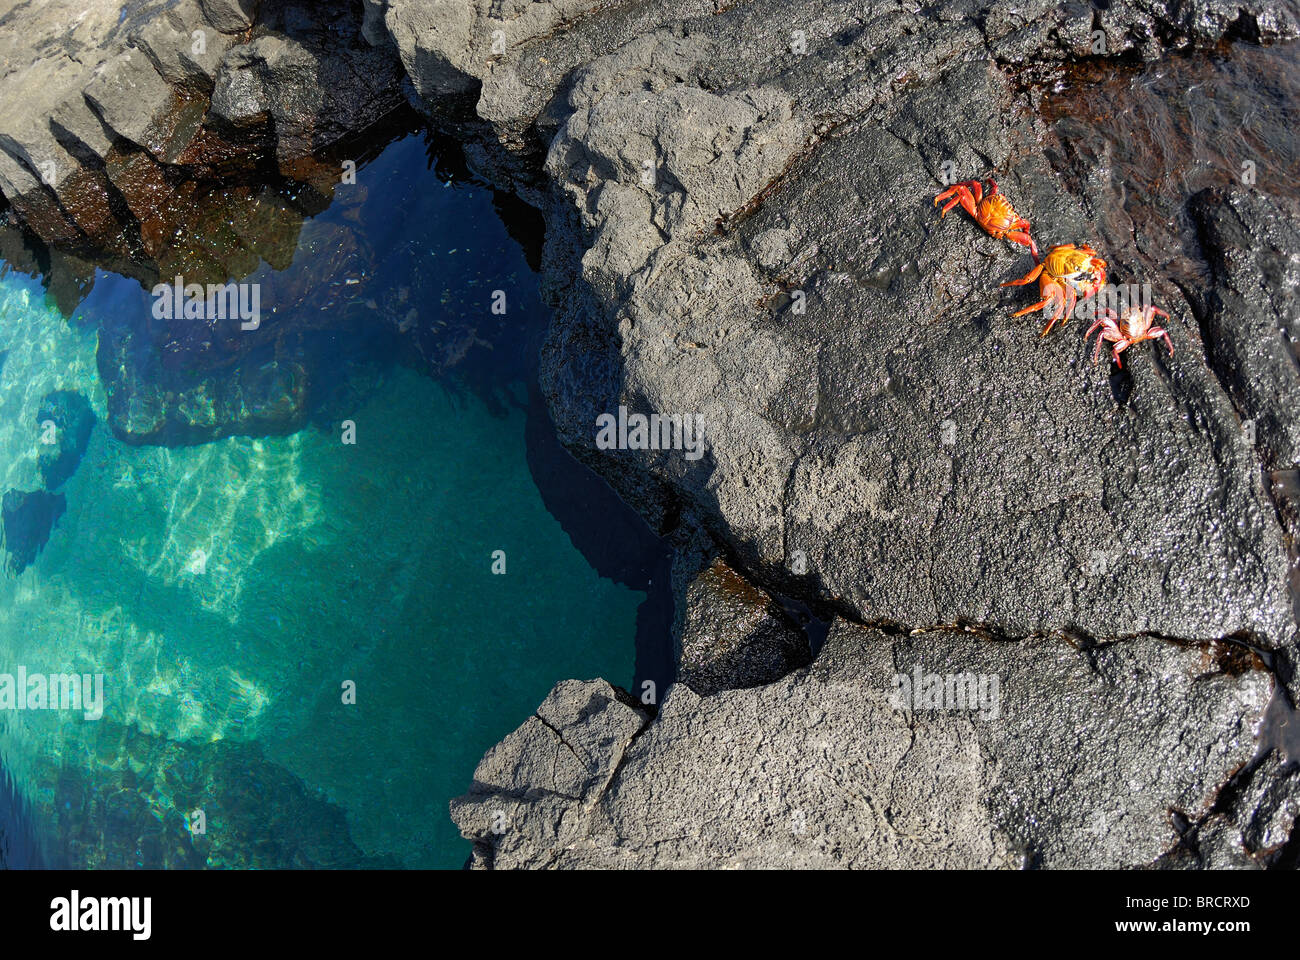 Piscina de aguas cristalinas y rocas volcánicas con cangrejos Sally Lightfoot (Grapsus grapsus) en Punta Vicente Roca, Islas Galápagos Foto de stock